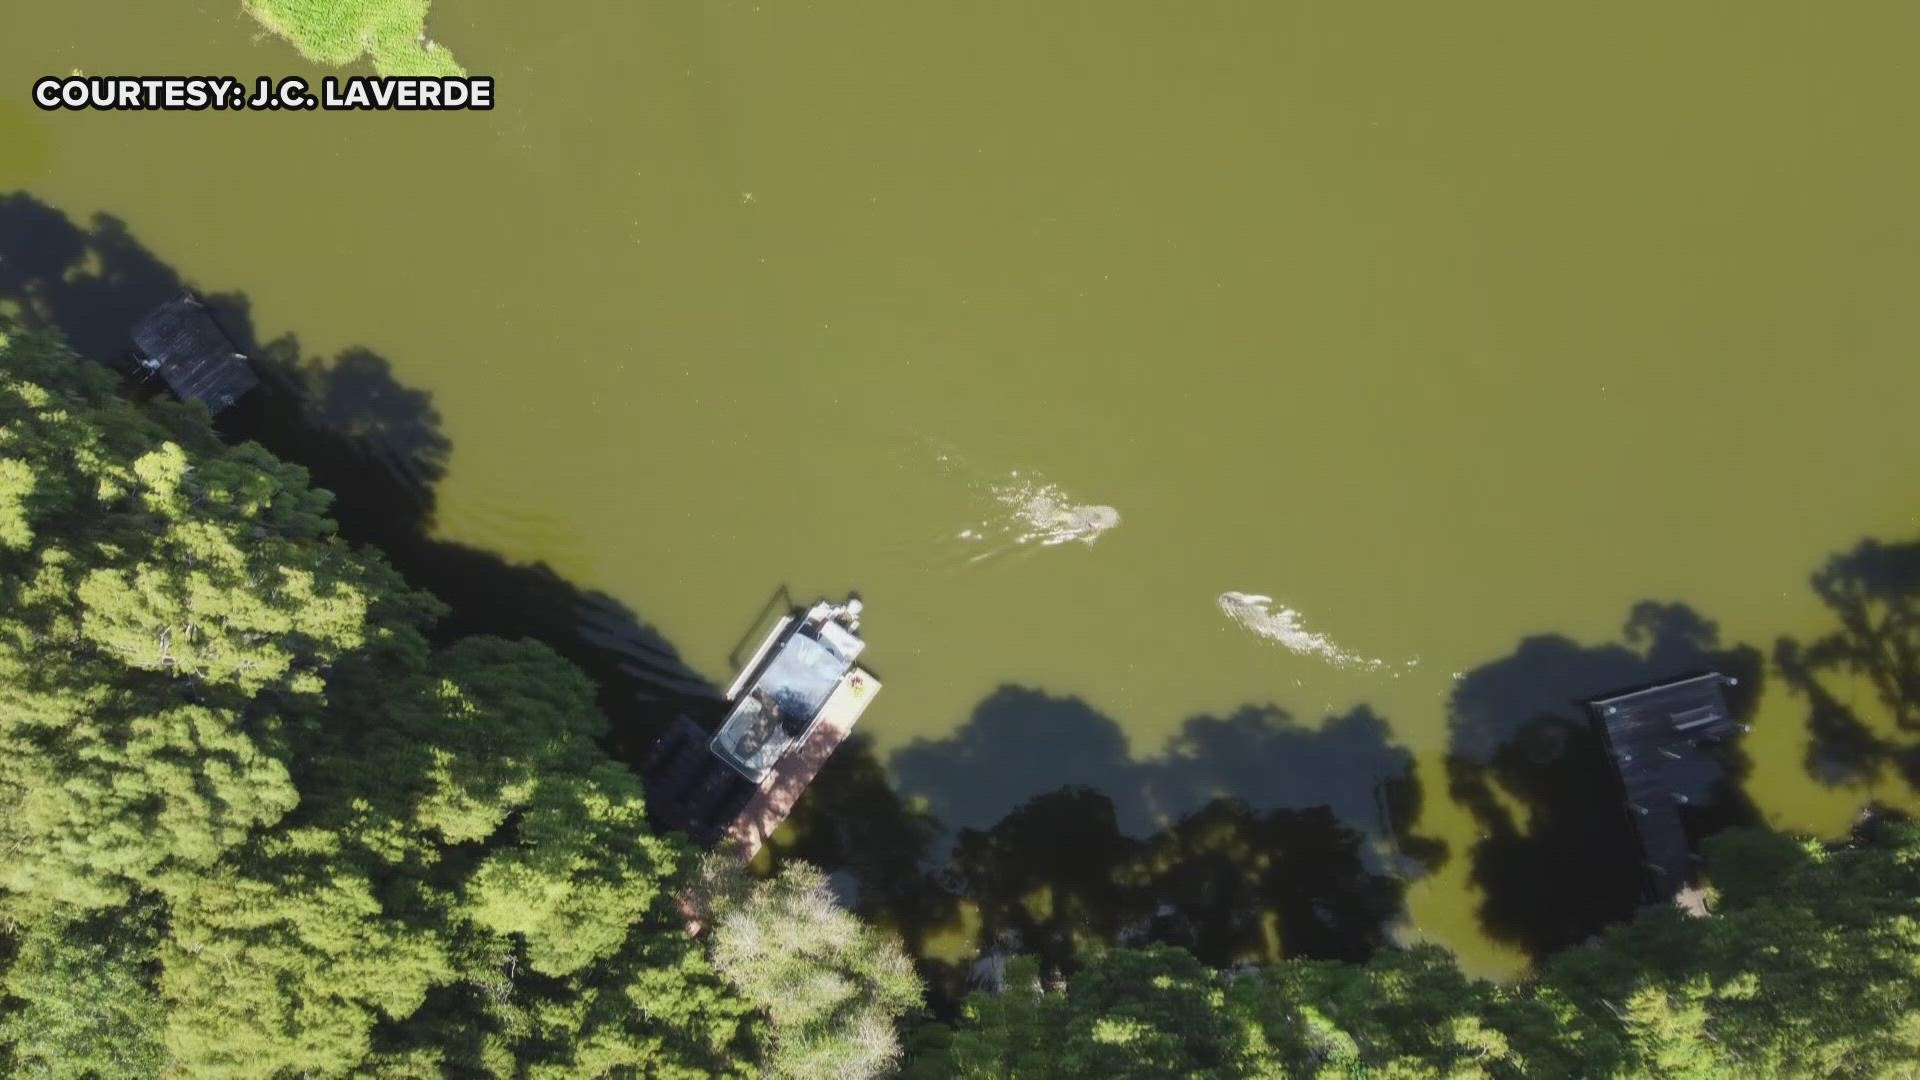 As LaVerde swam alone near the shoreline, drone video shows a massive alligator swimming toward him.